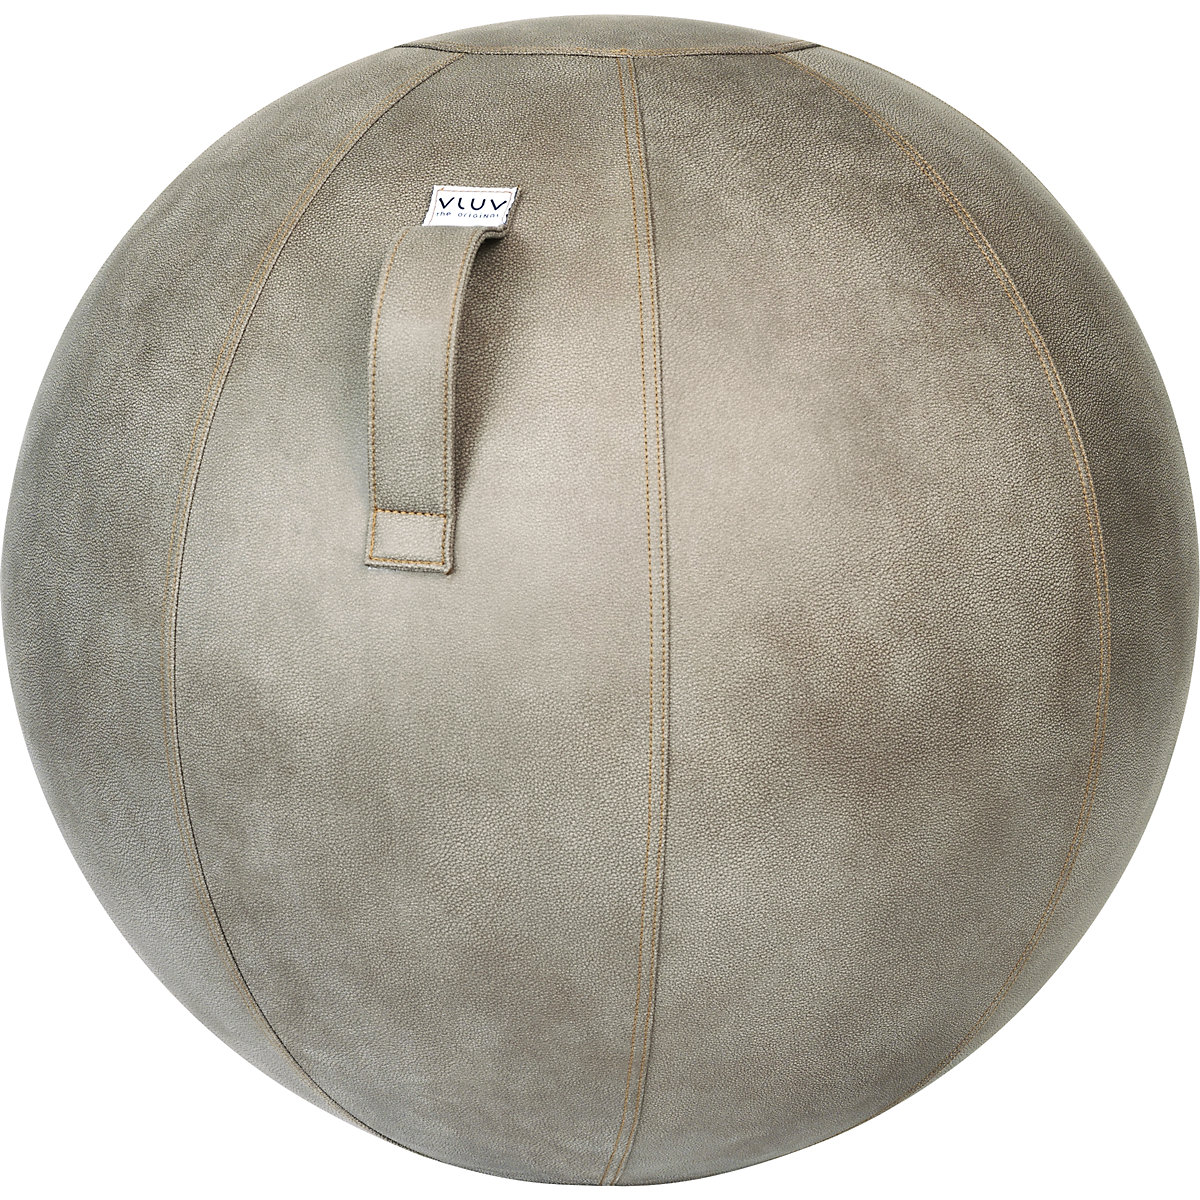 Sedací míč VEEL – VLUV, imitace kůže z mikrovlákna, 700 – 750 mm, bahno-8